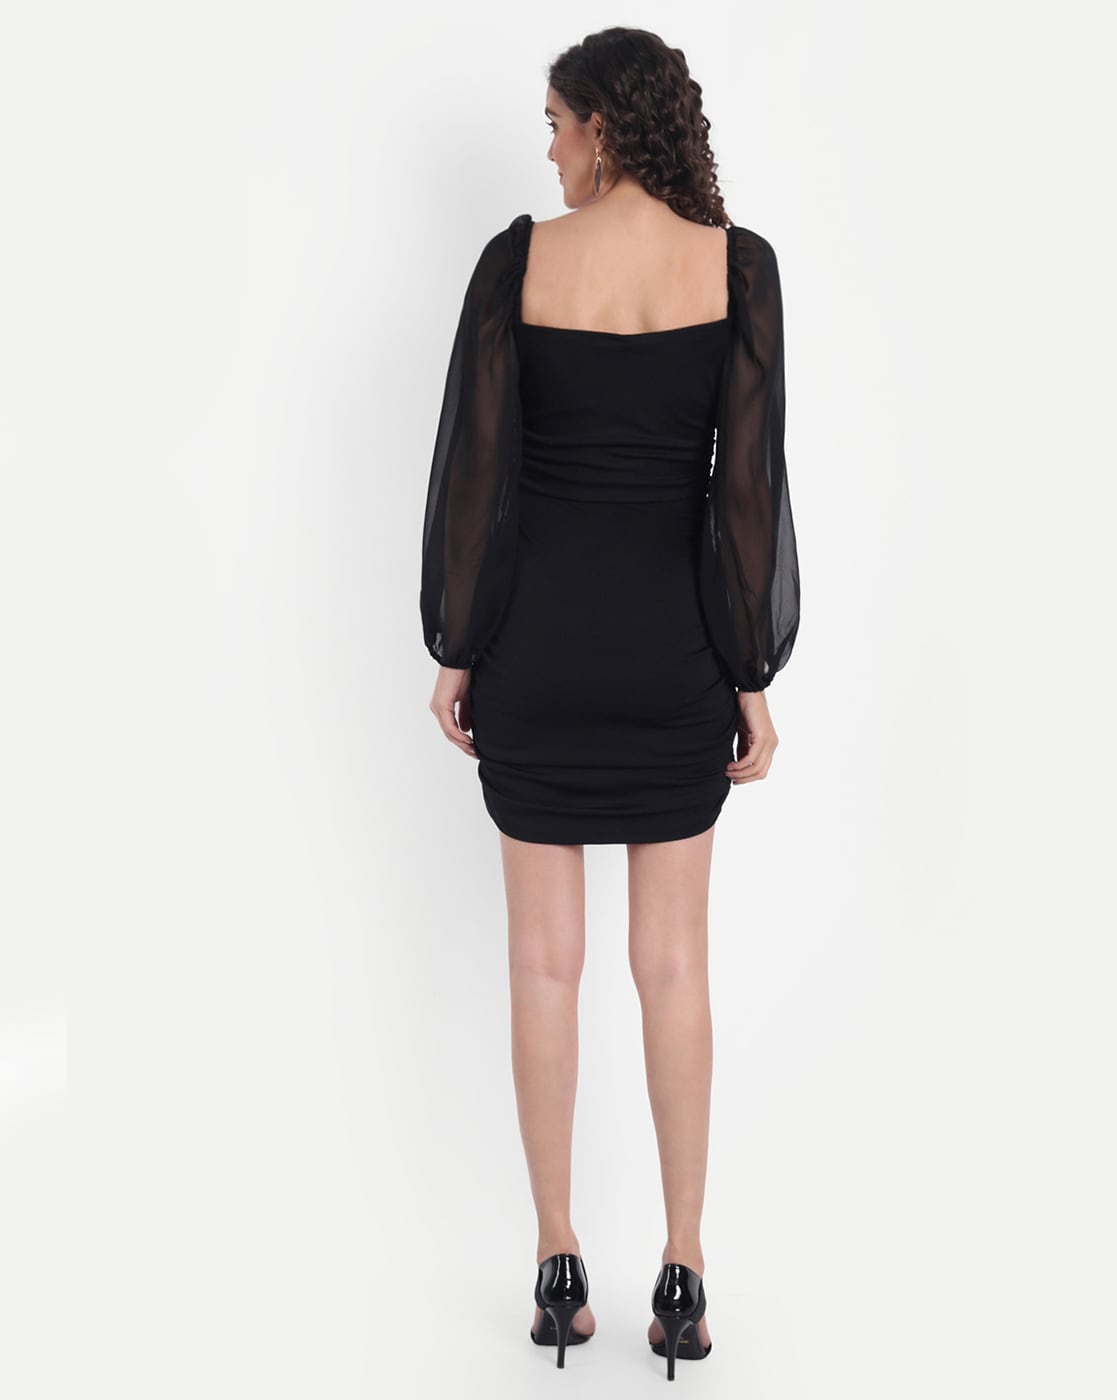 Cute Black Mini Dress - Velvet Mini Dress - Sheer Mesh Dress - Lulus